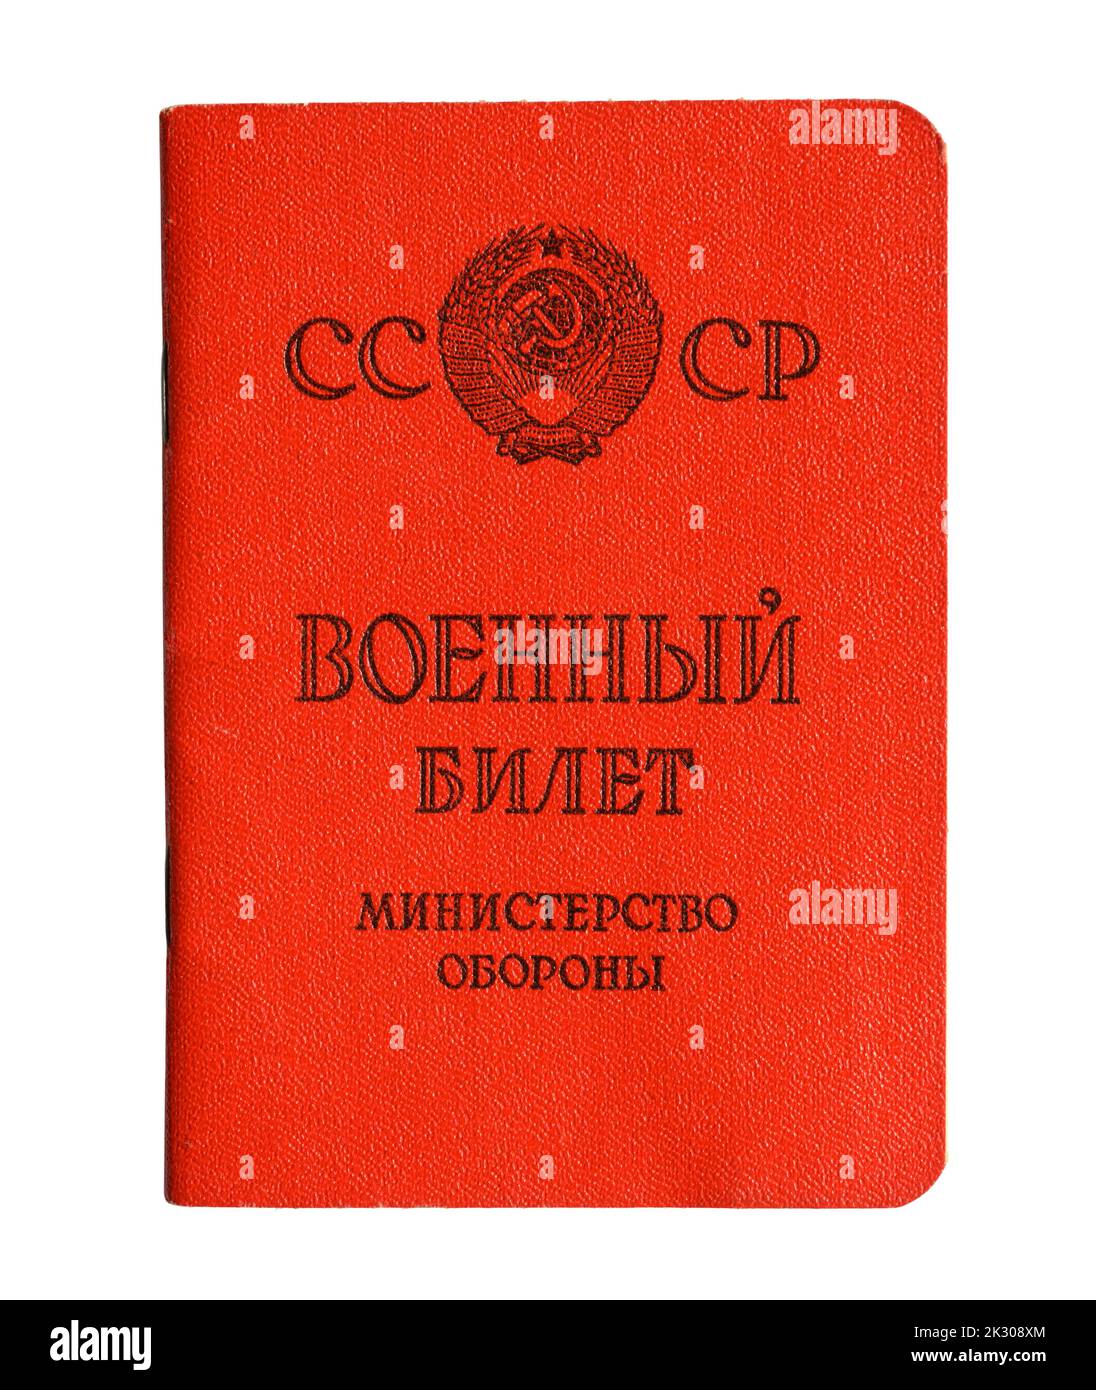 Certificato del serveman dell'Unione Sovietica isolato su sfondo bianco. Concetto di mobilitazione in Russia, guerra in Ucraina e riservista russo. Traslazione Foto Stock